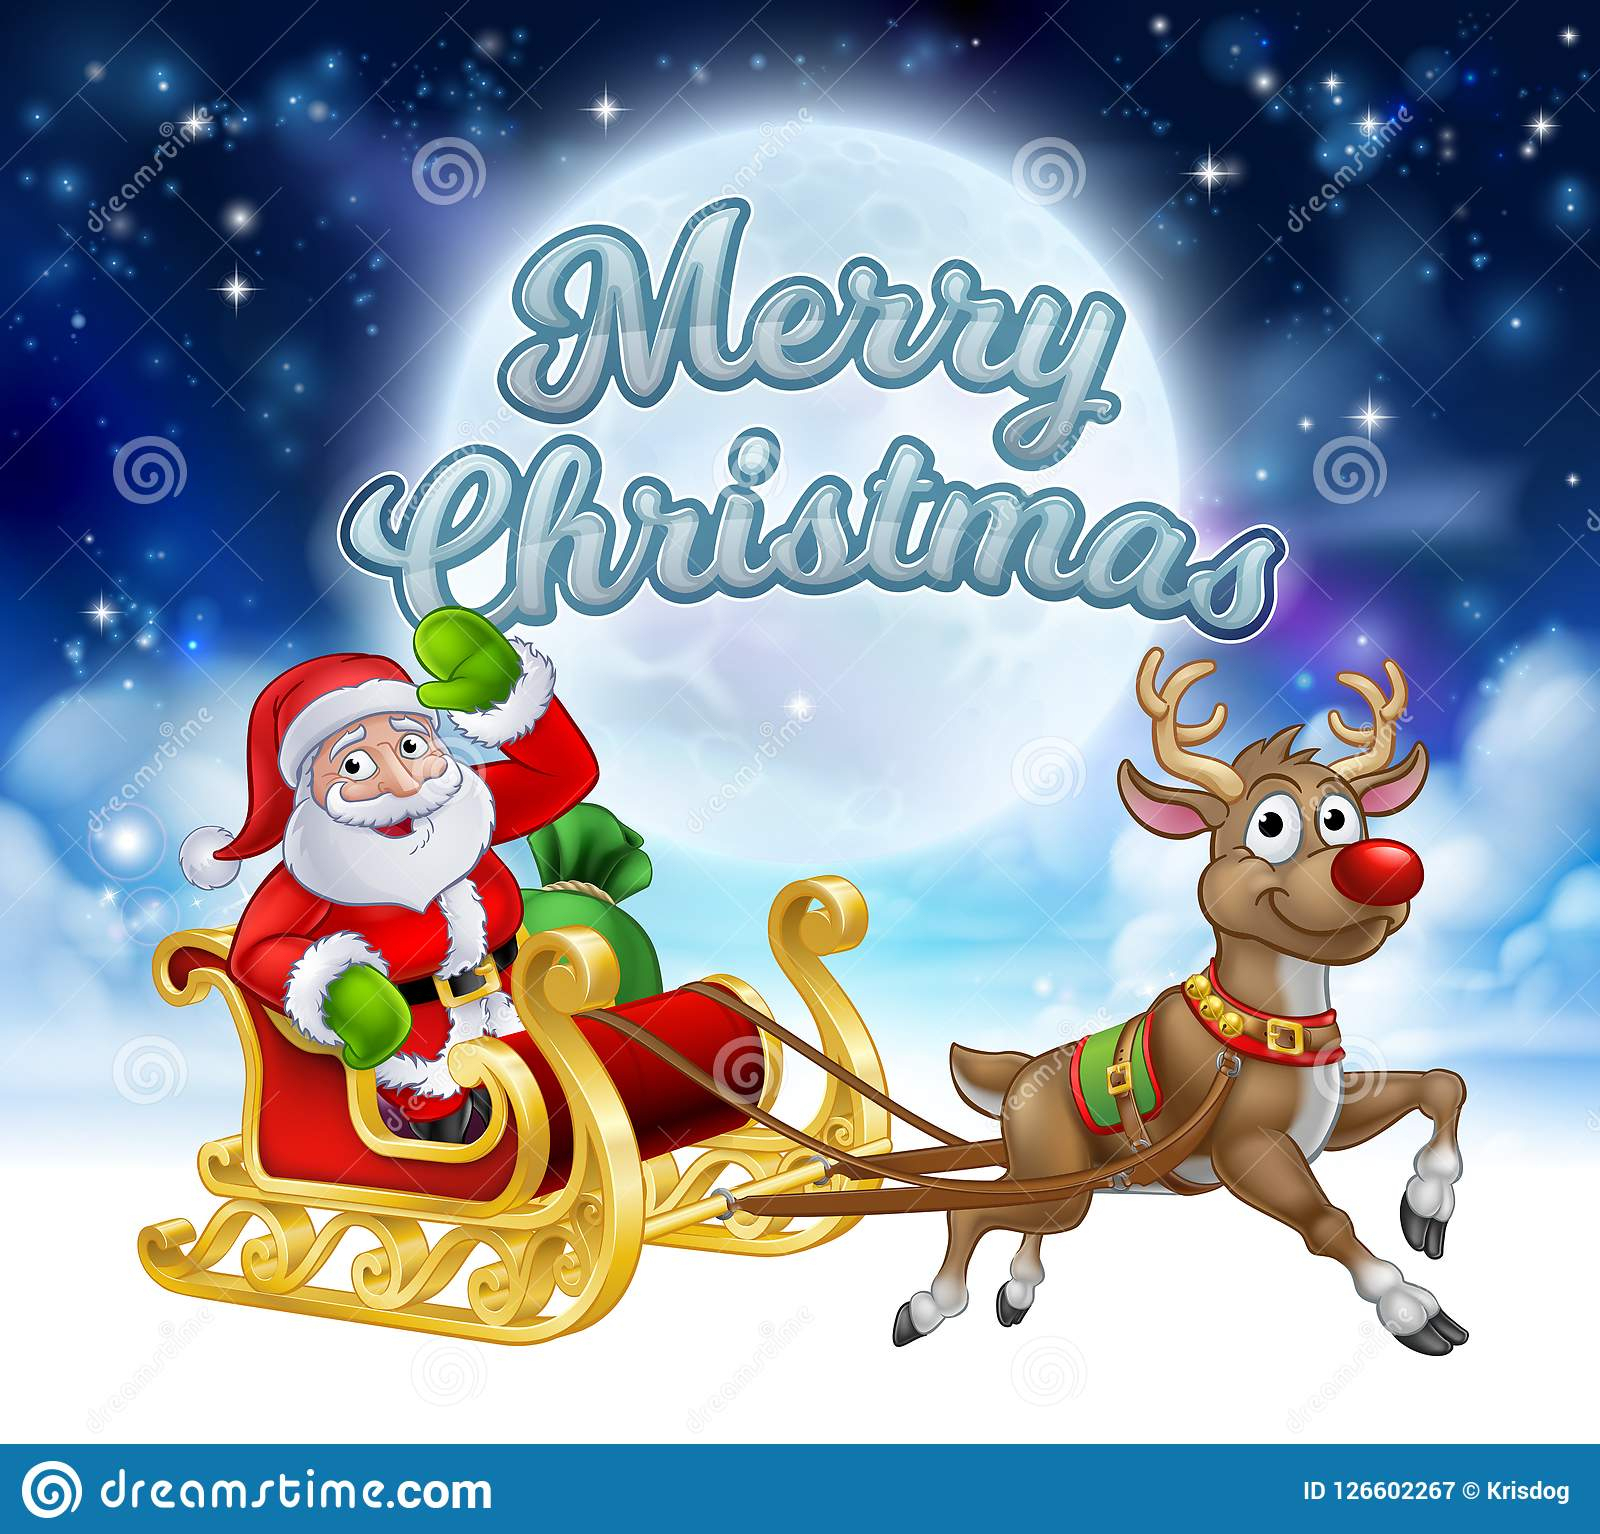 Frohe Weihnachten Santa Sleigh Cartoon Graphic Vektor innen Lustige Weihnachtsbilder Gratis